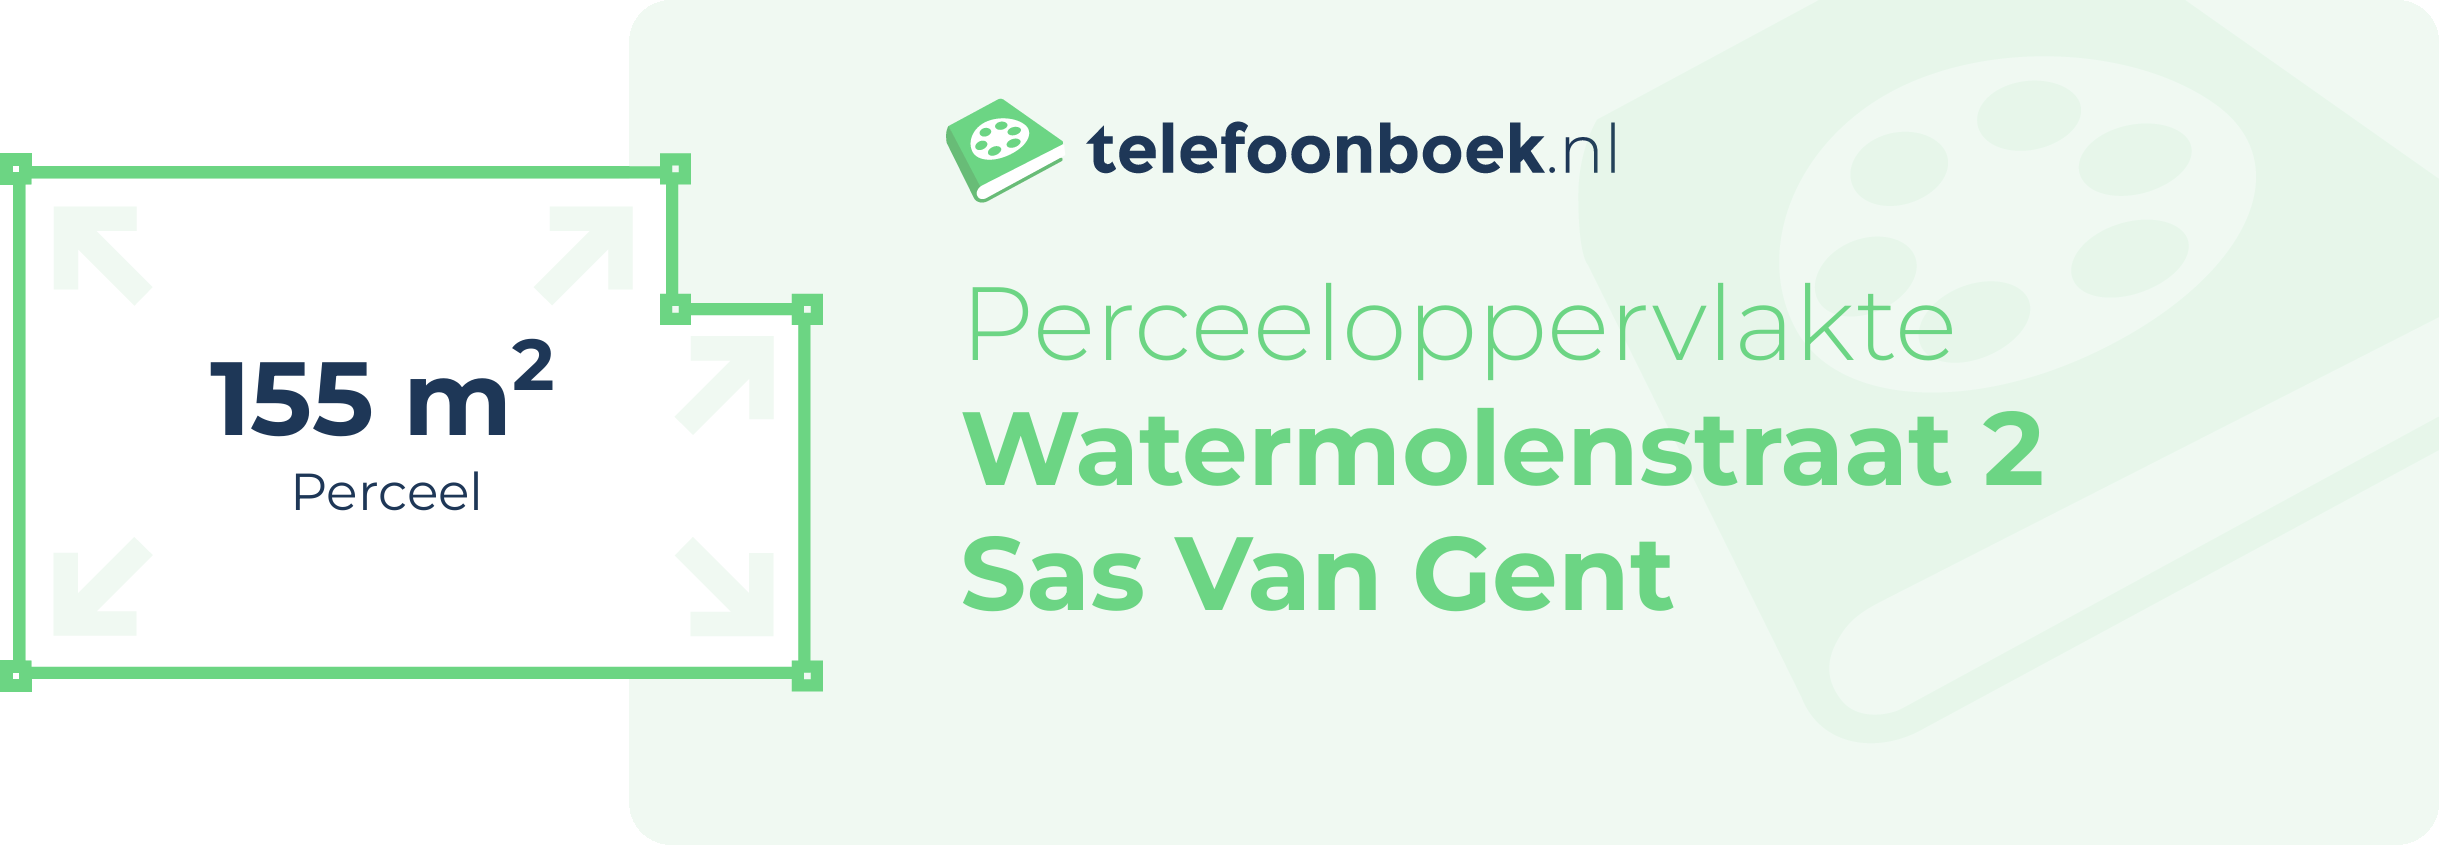 Perceeloppervlakte Watermolenstraat 2 Sas Van Gent